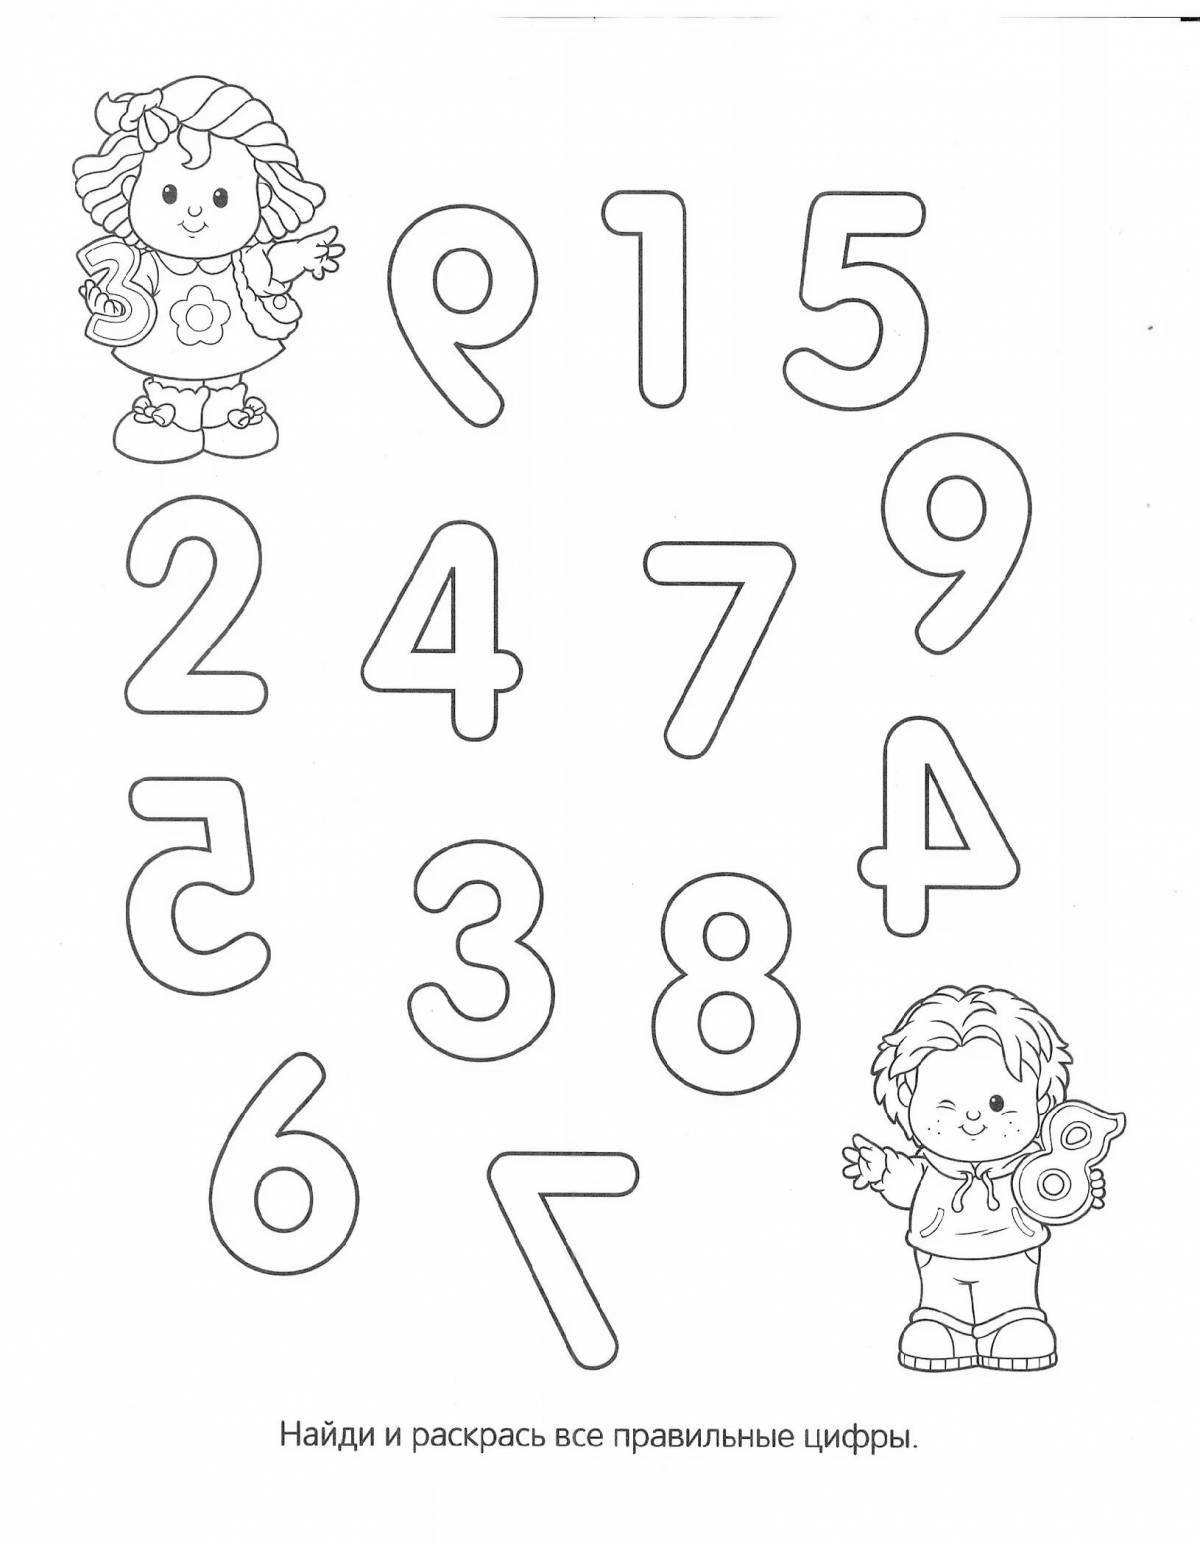 Веселые раскраски с буквами и цифрами для детей 5-6 лет